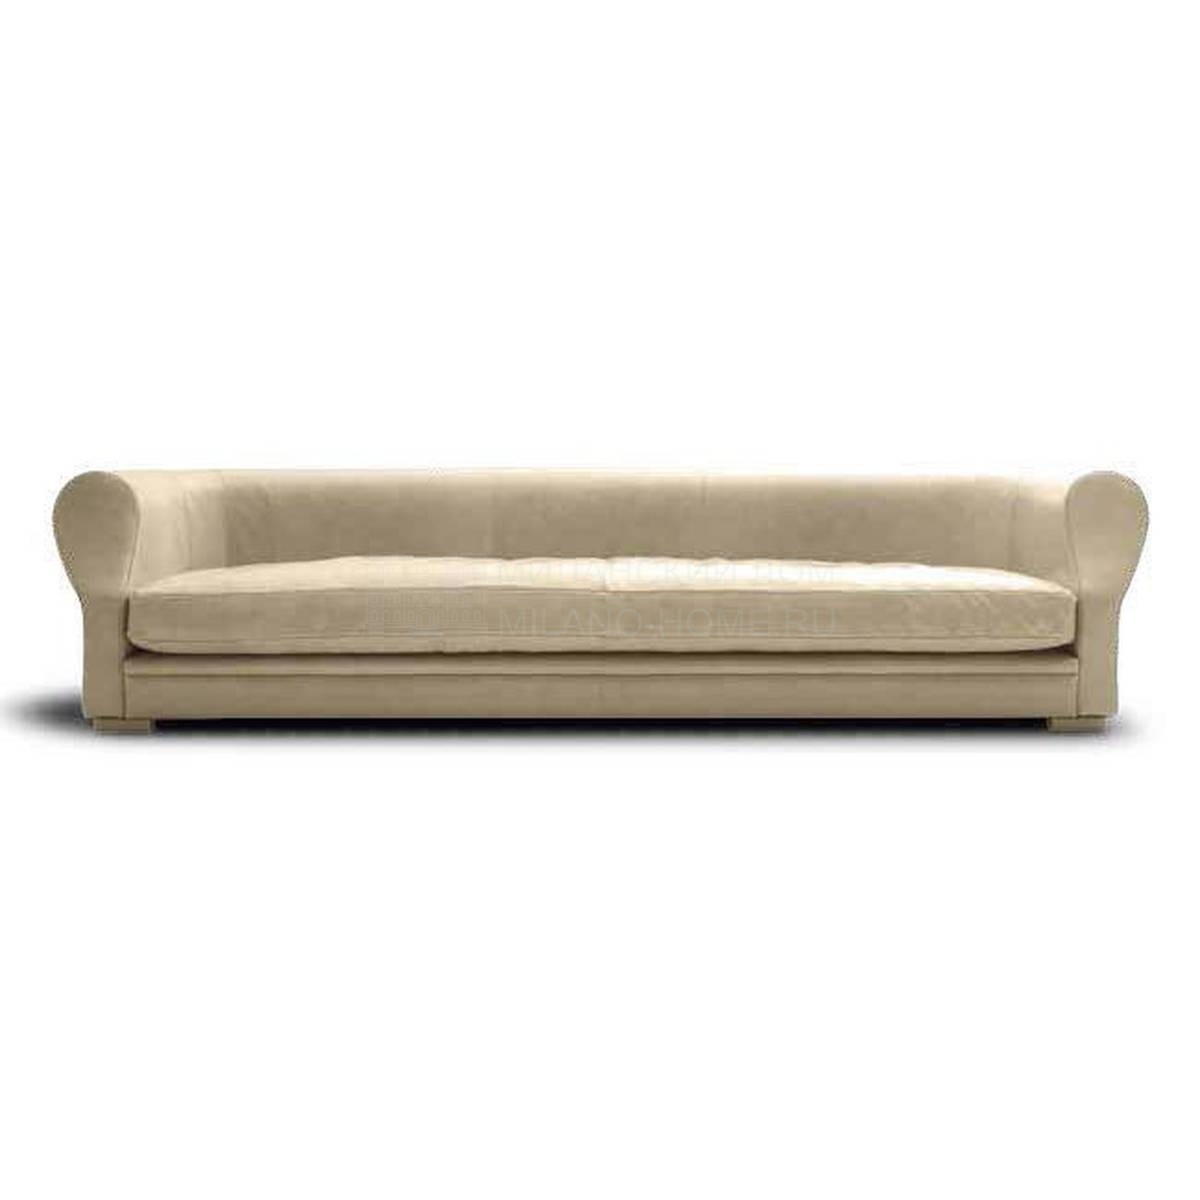 Прямой диван Henry Sofa из Италии фабрики ULIVI